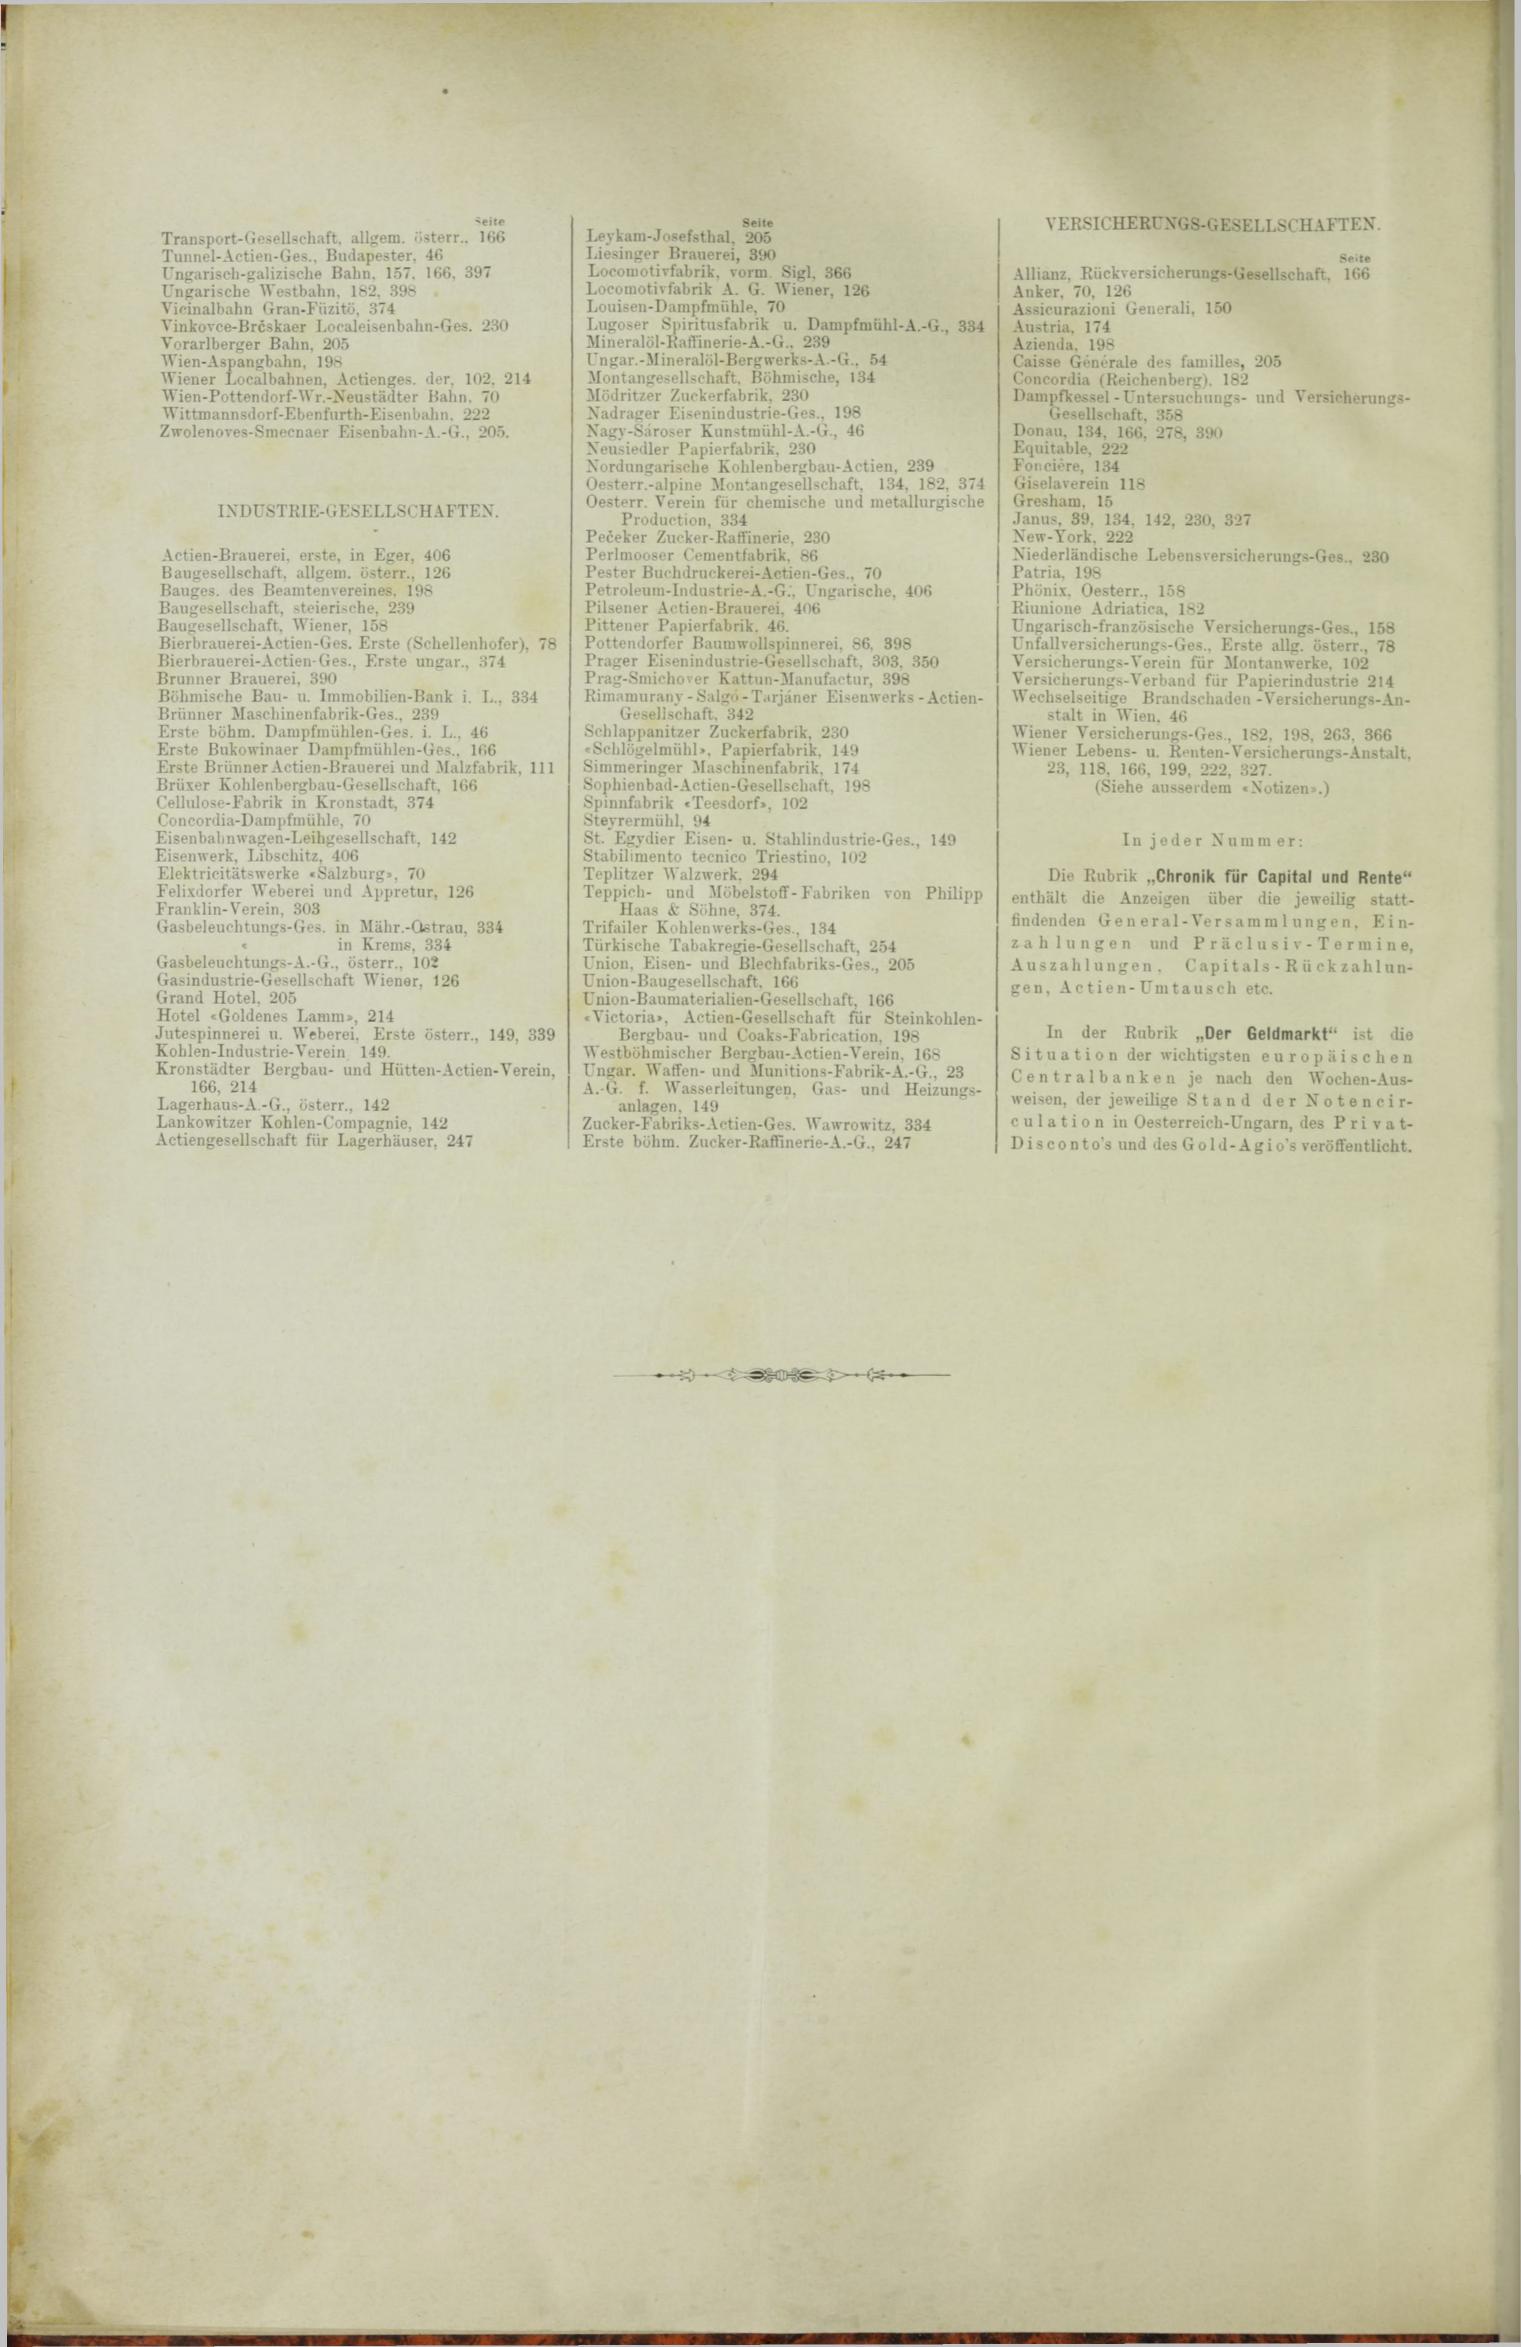 Der Tresor 26.04.1888 - Seite 12